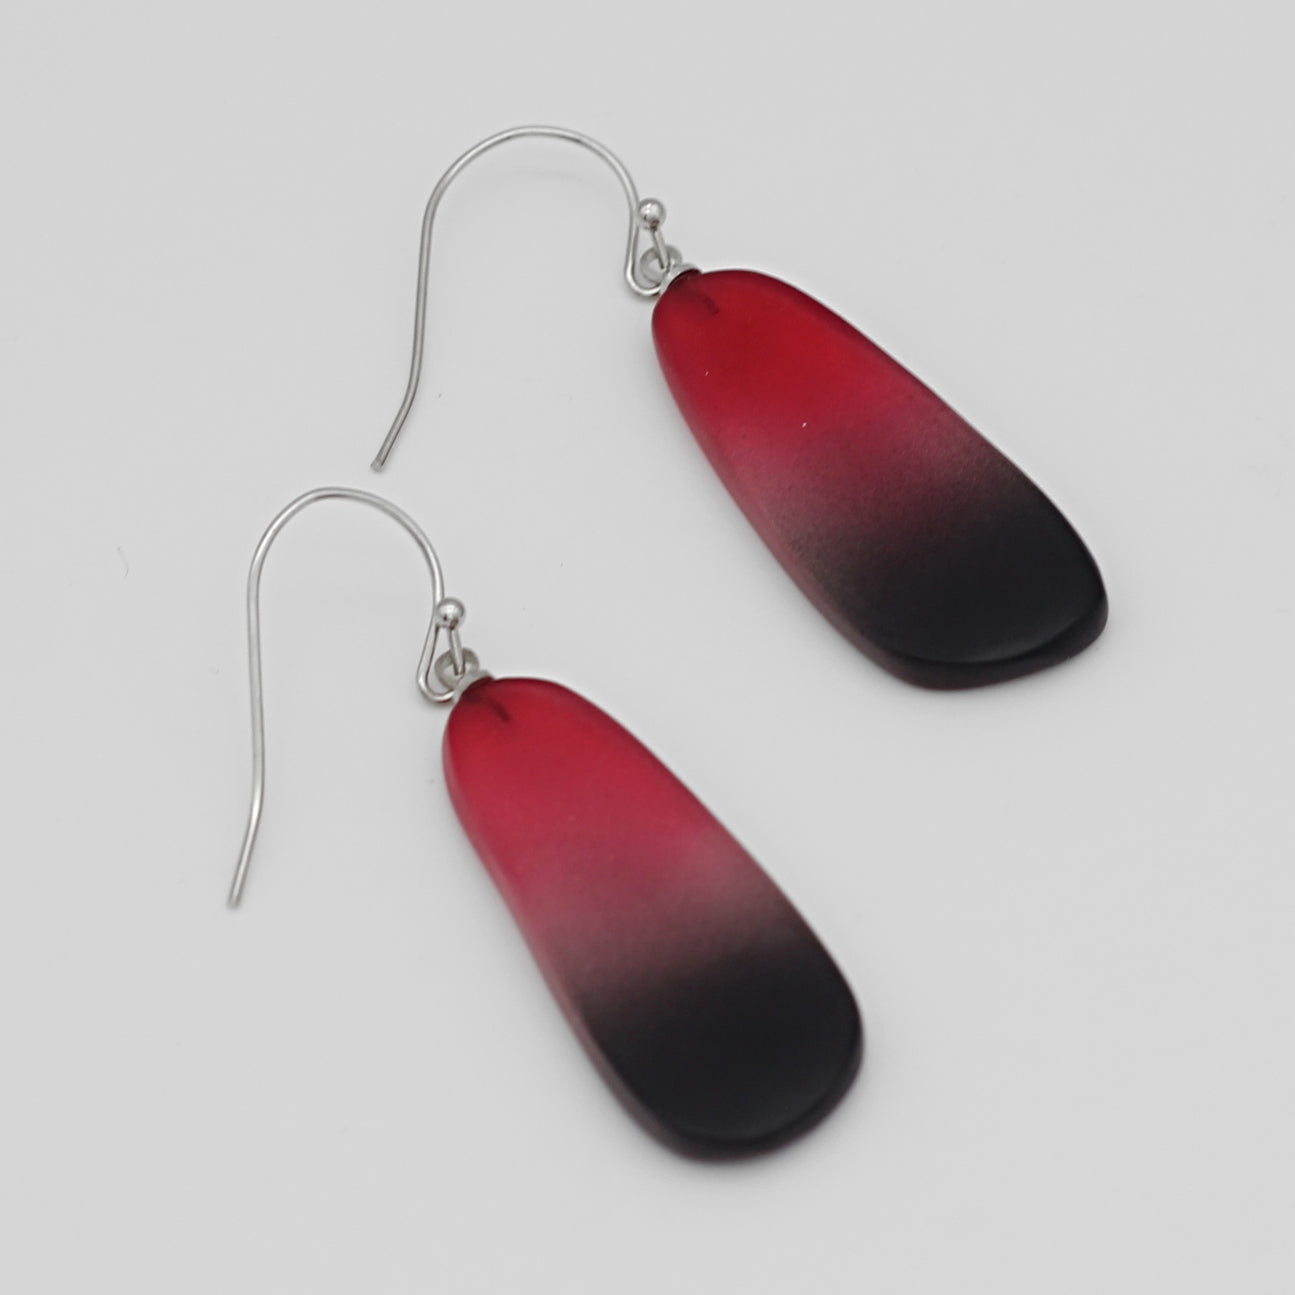 Red and Black Bennett Earrings